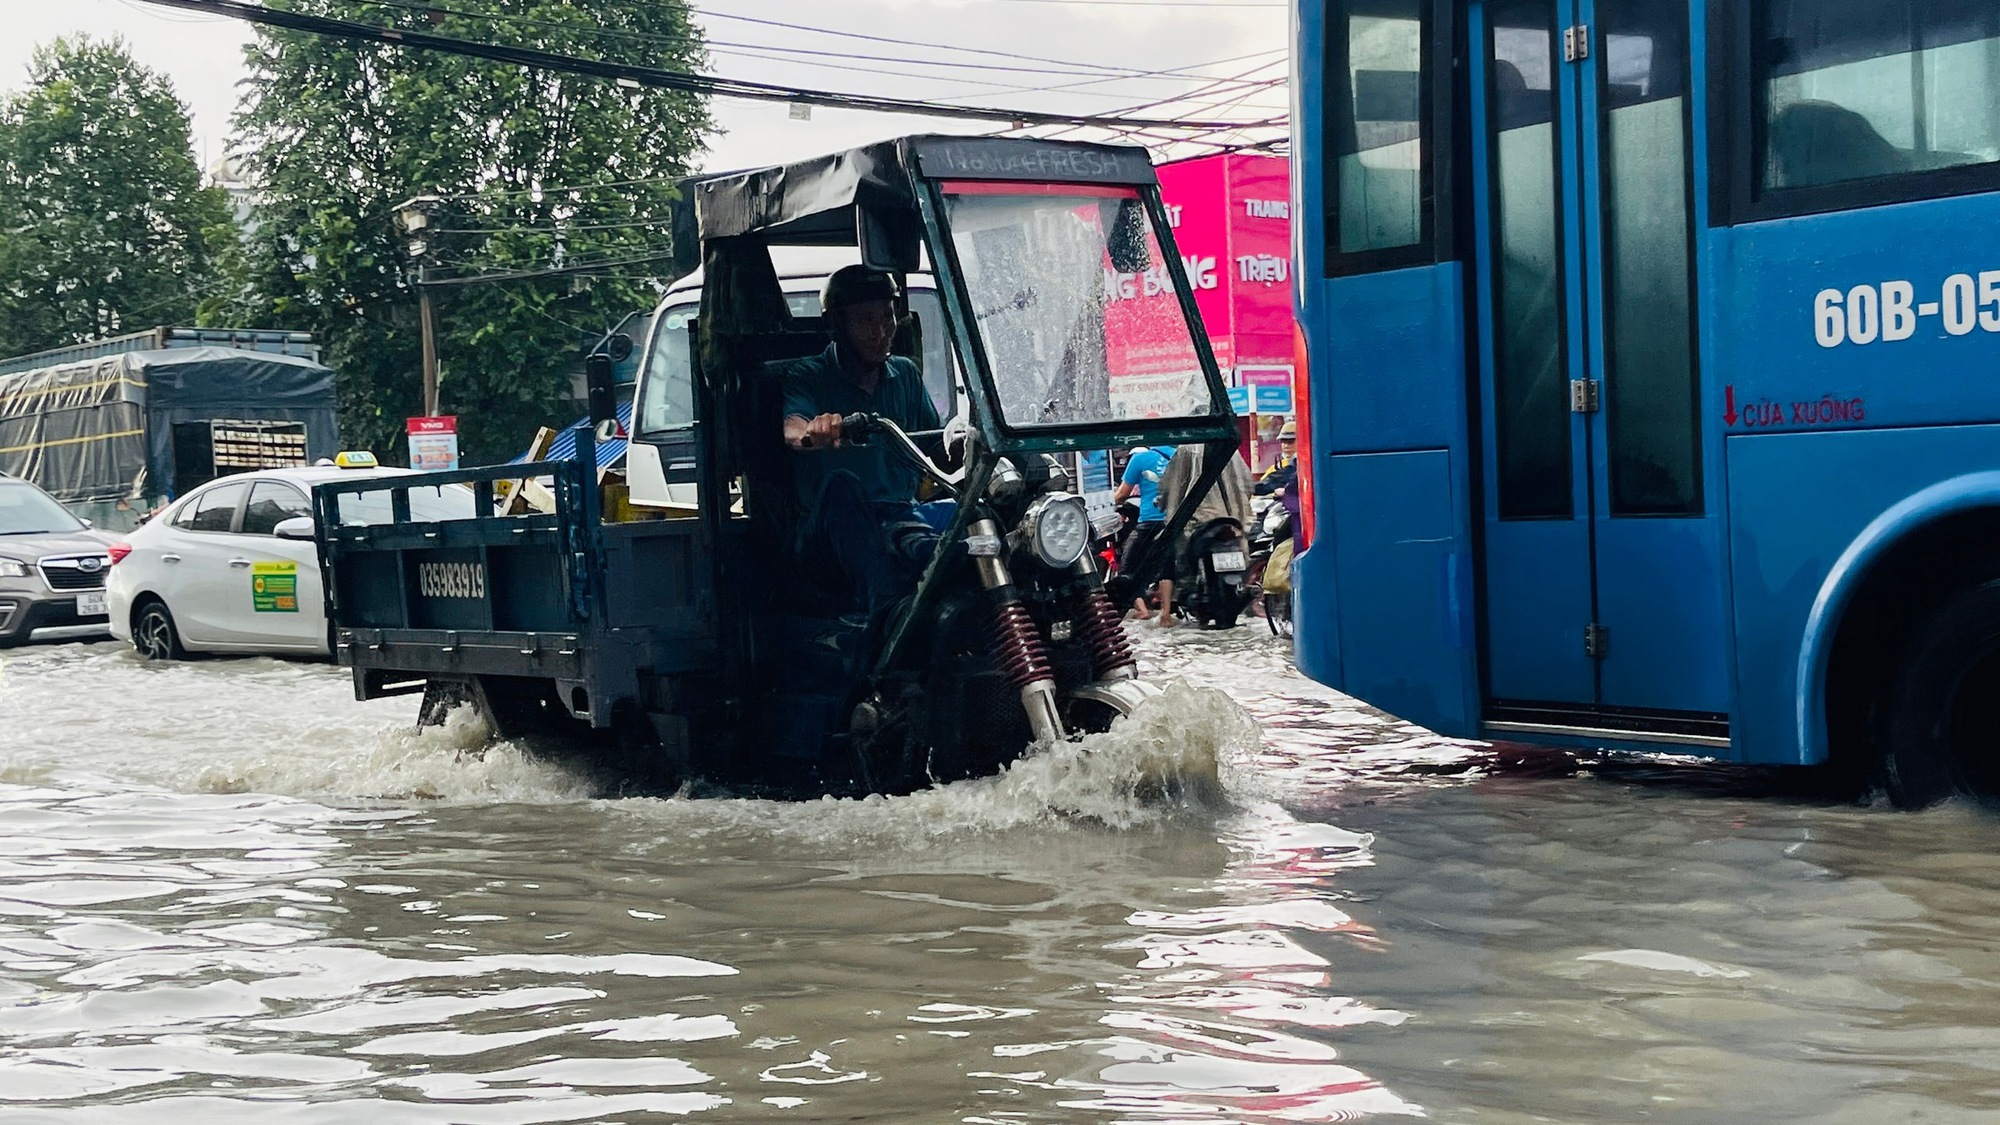 Đồng Nai liên tục mưa lớn, người dân khổ sở vừa kẹt xe, vừa lội nước ngập về nhà - Ảnh 2.